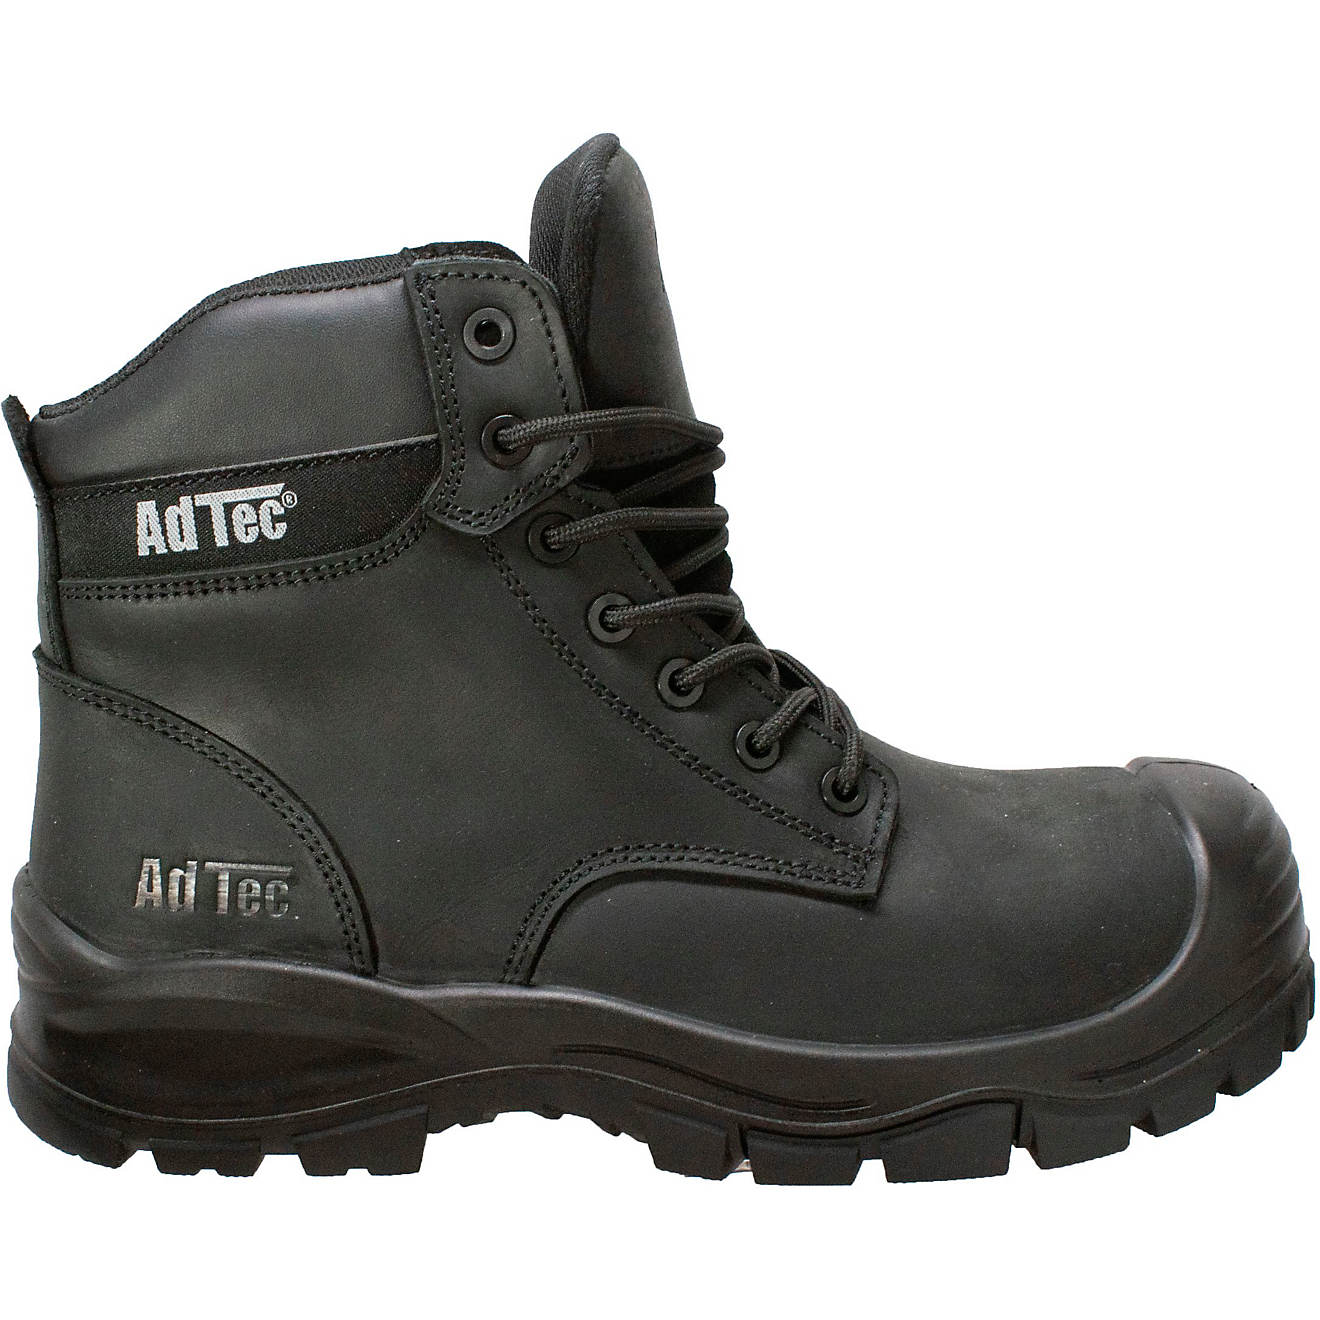 AdTec Men's Waterproof Composite Toe Work Boots                                                                                  - view number 1